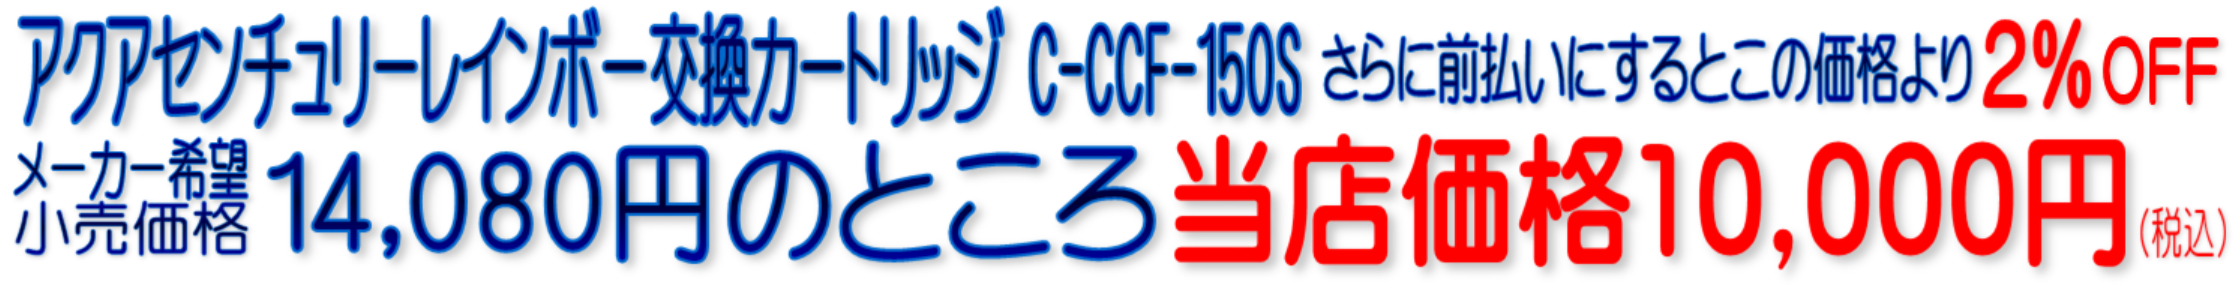 C-CCF-150S アクアセンチュリーレインボー